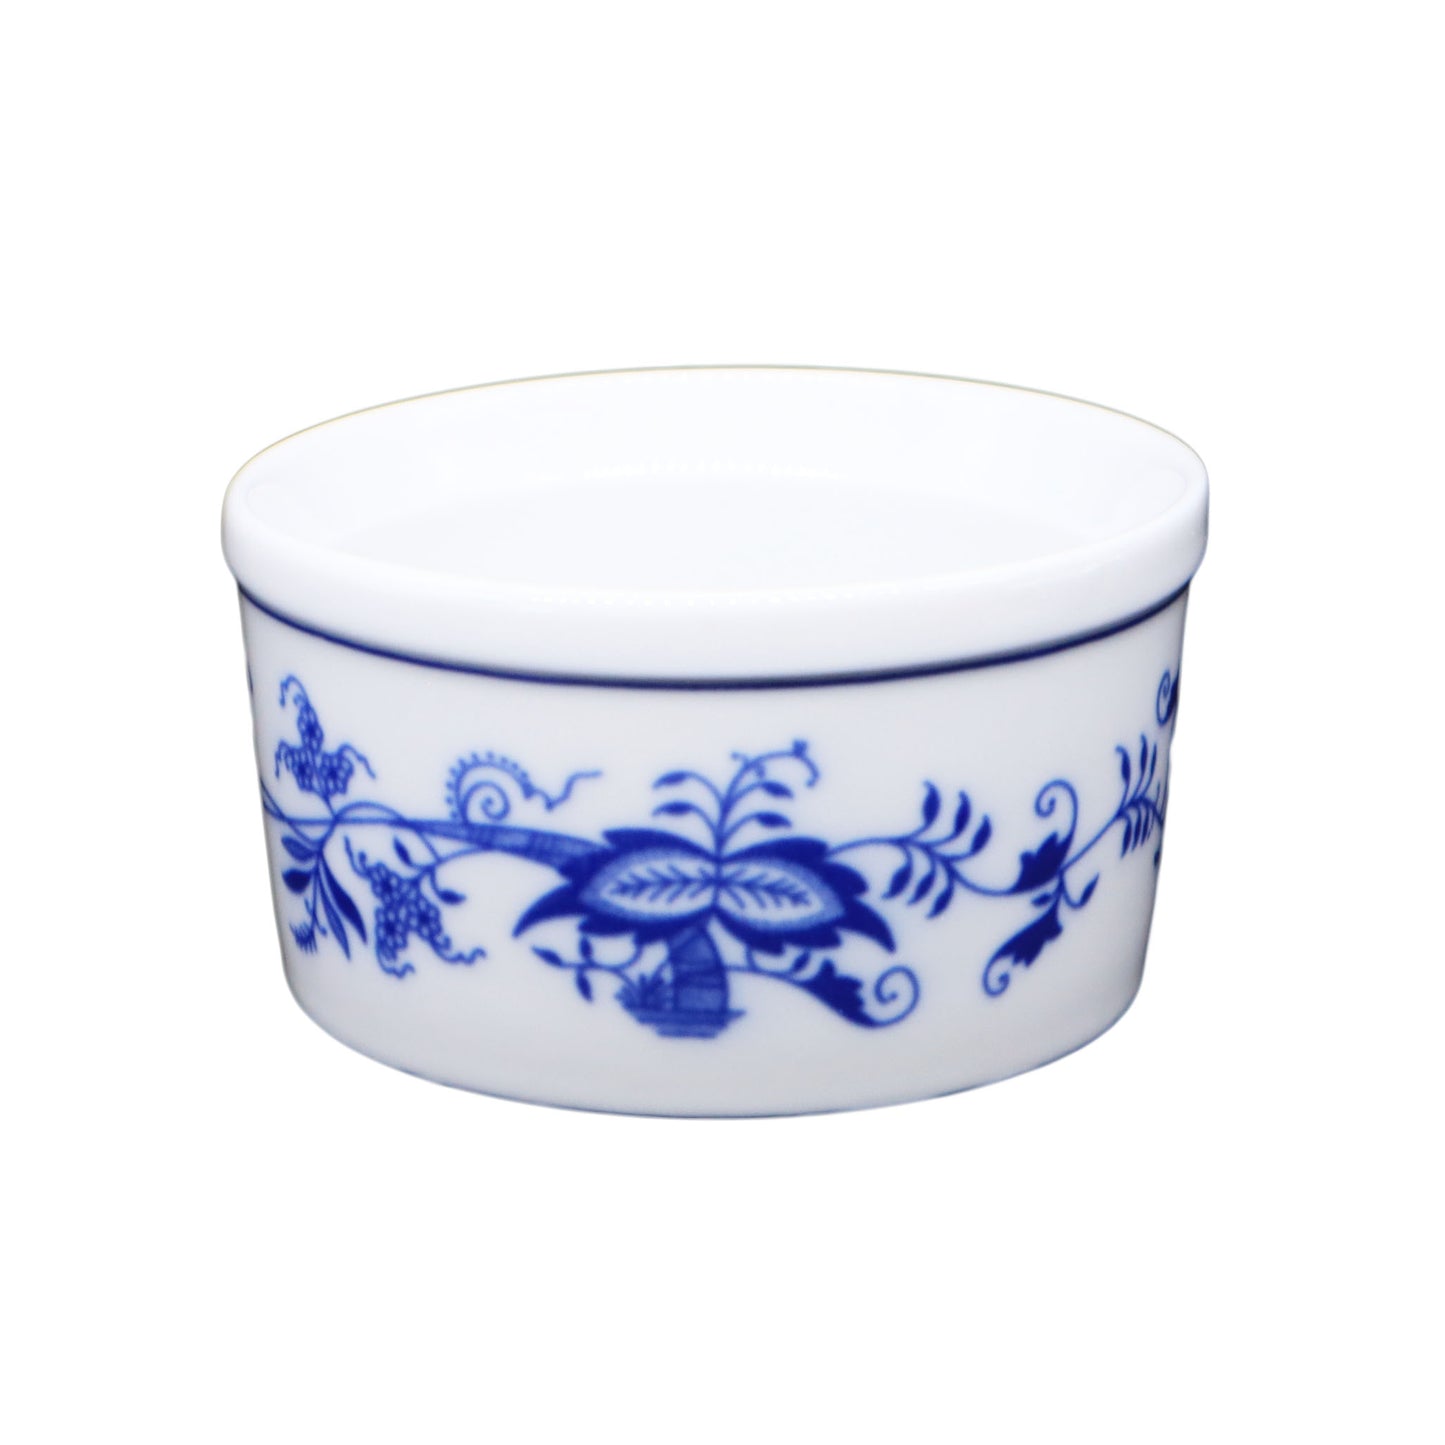 【ボヘミア陶器】 ブルーオニオントラディション ラメキン2個セット